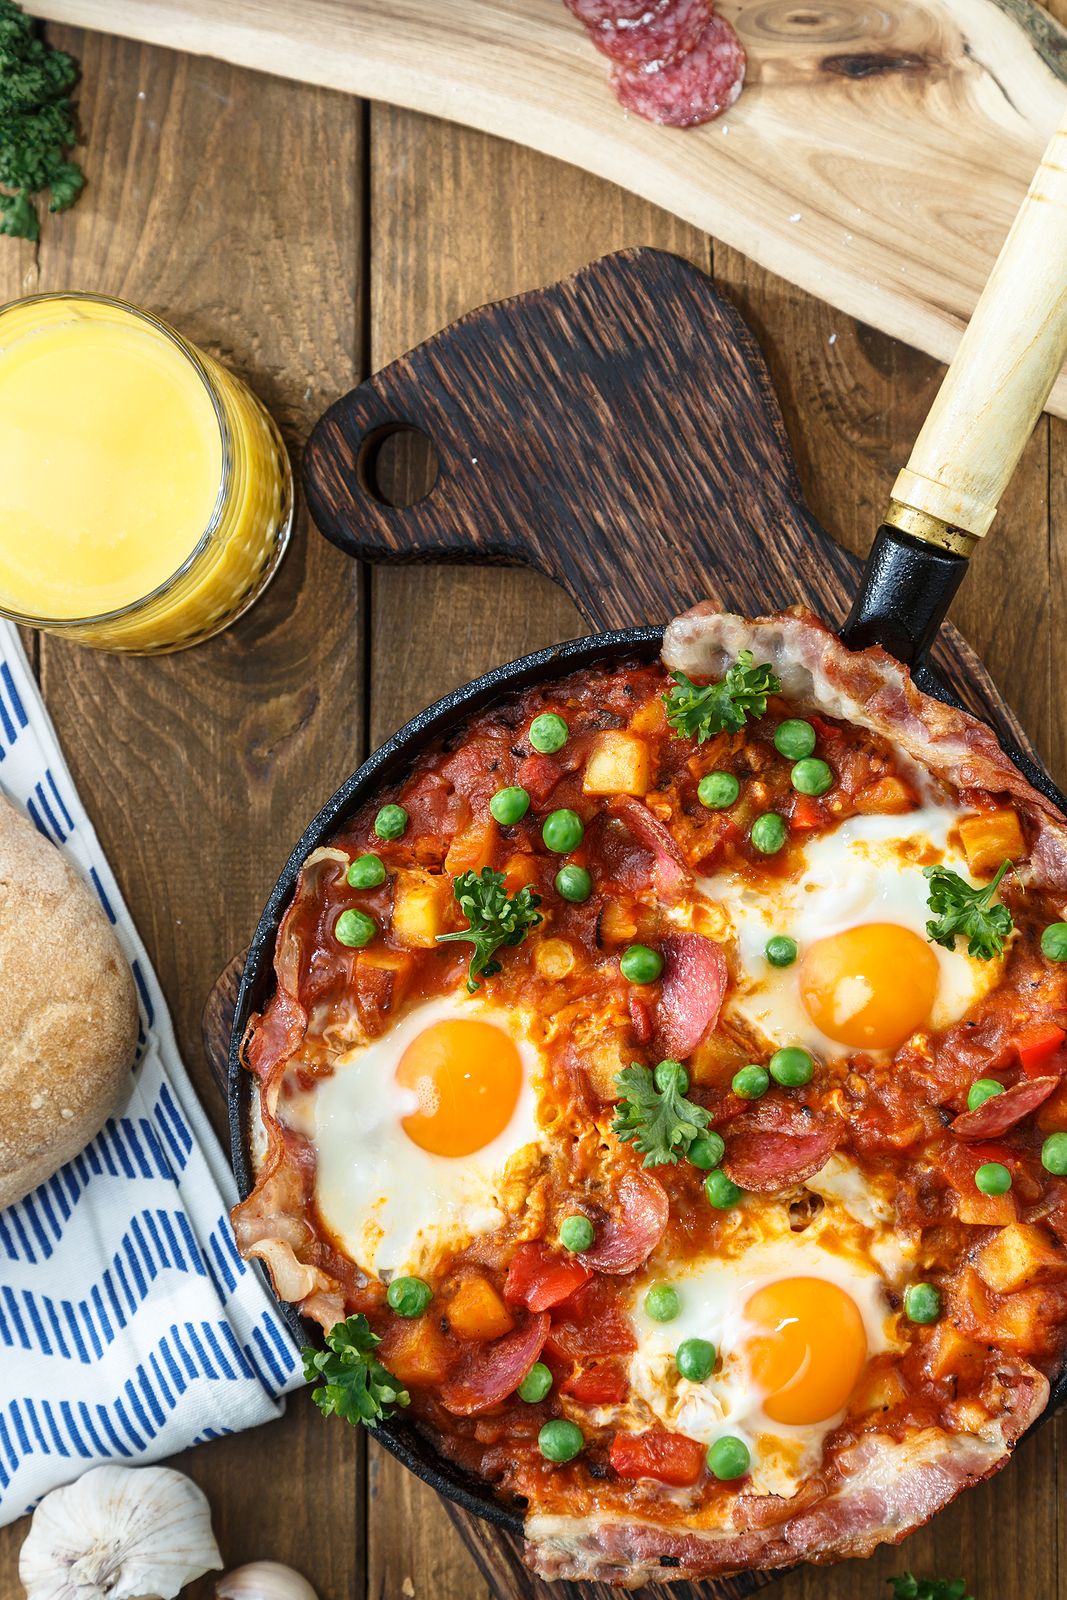 Te contamos cómo preparar los huevos al plato más ricos. Foto: bigstock 